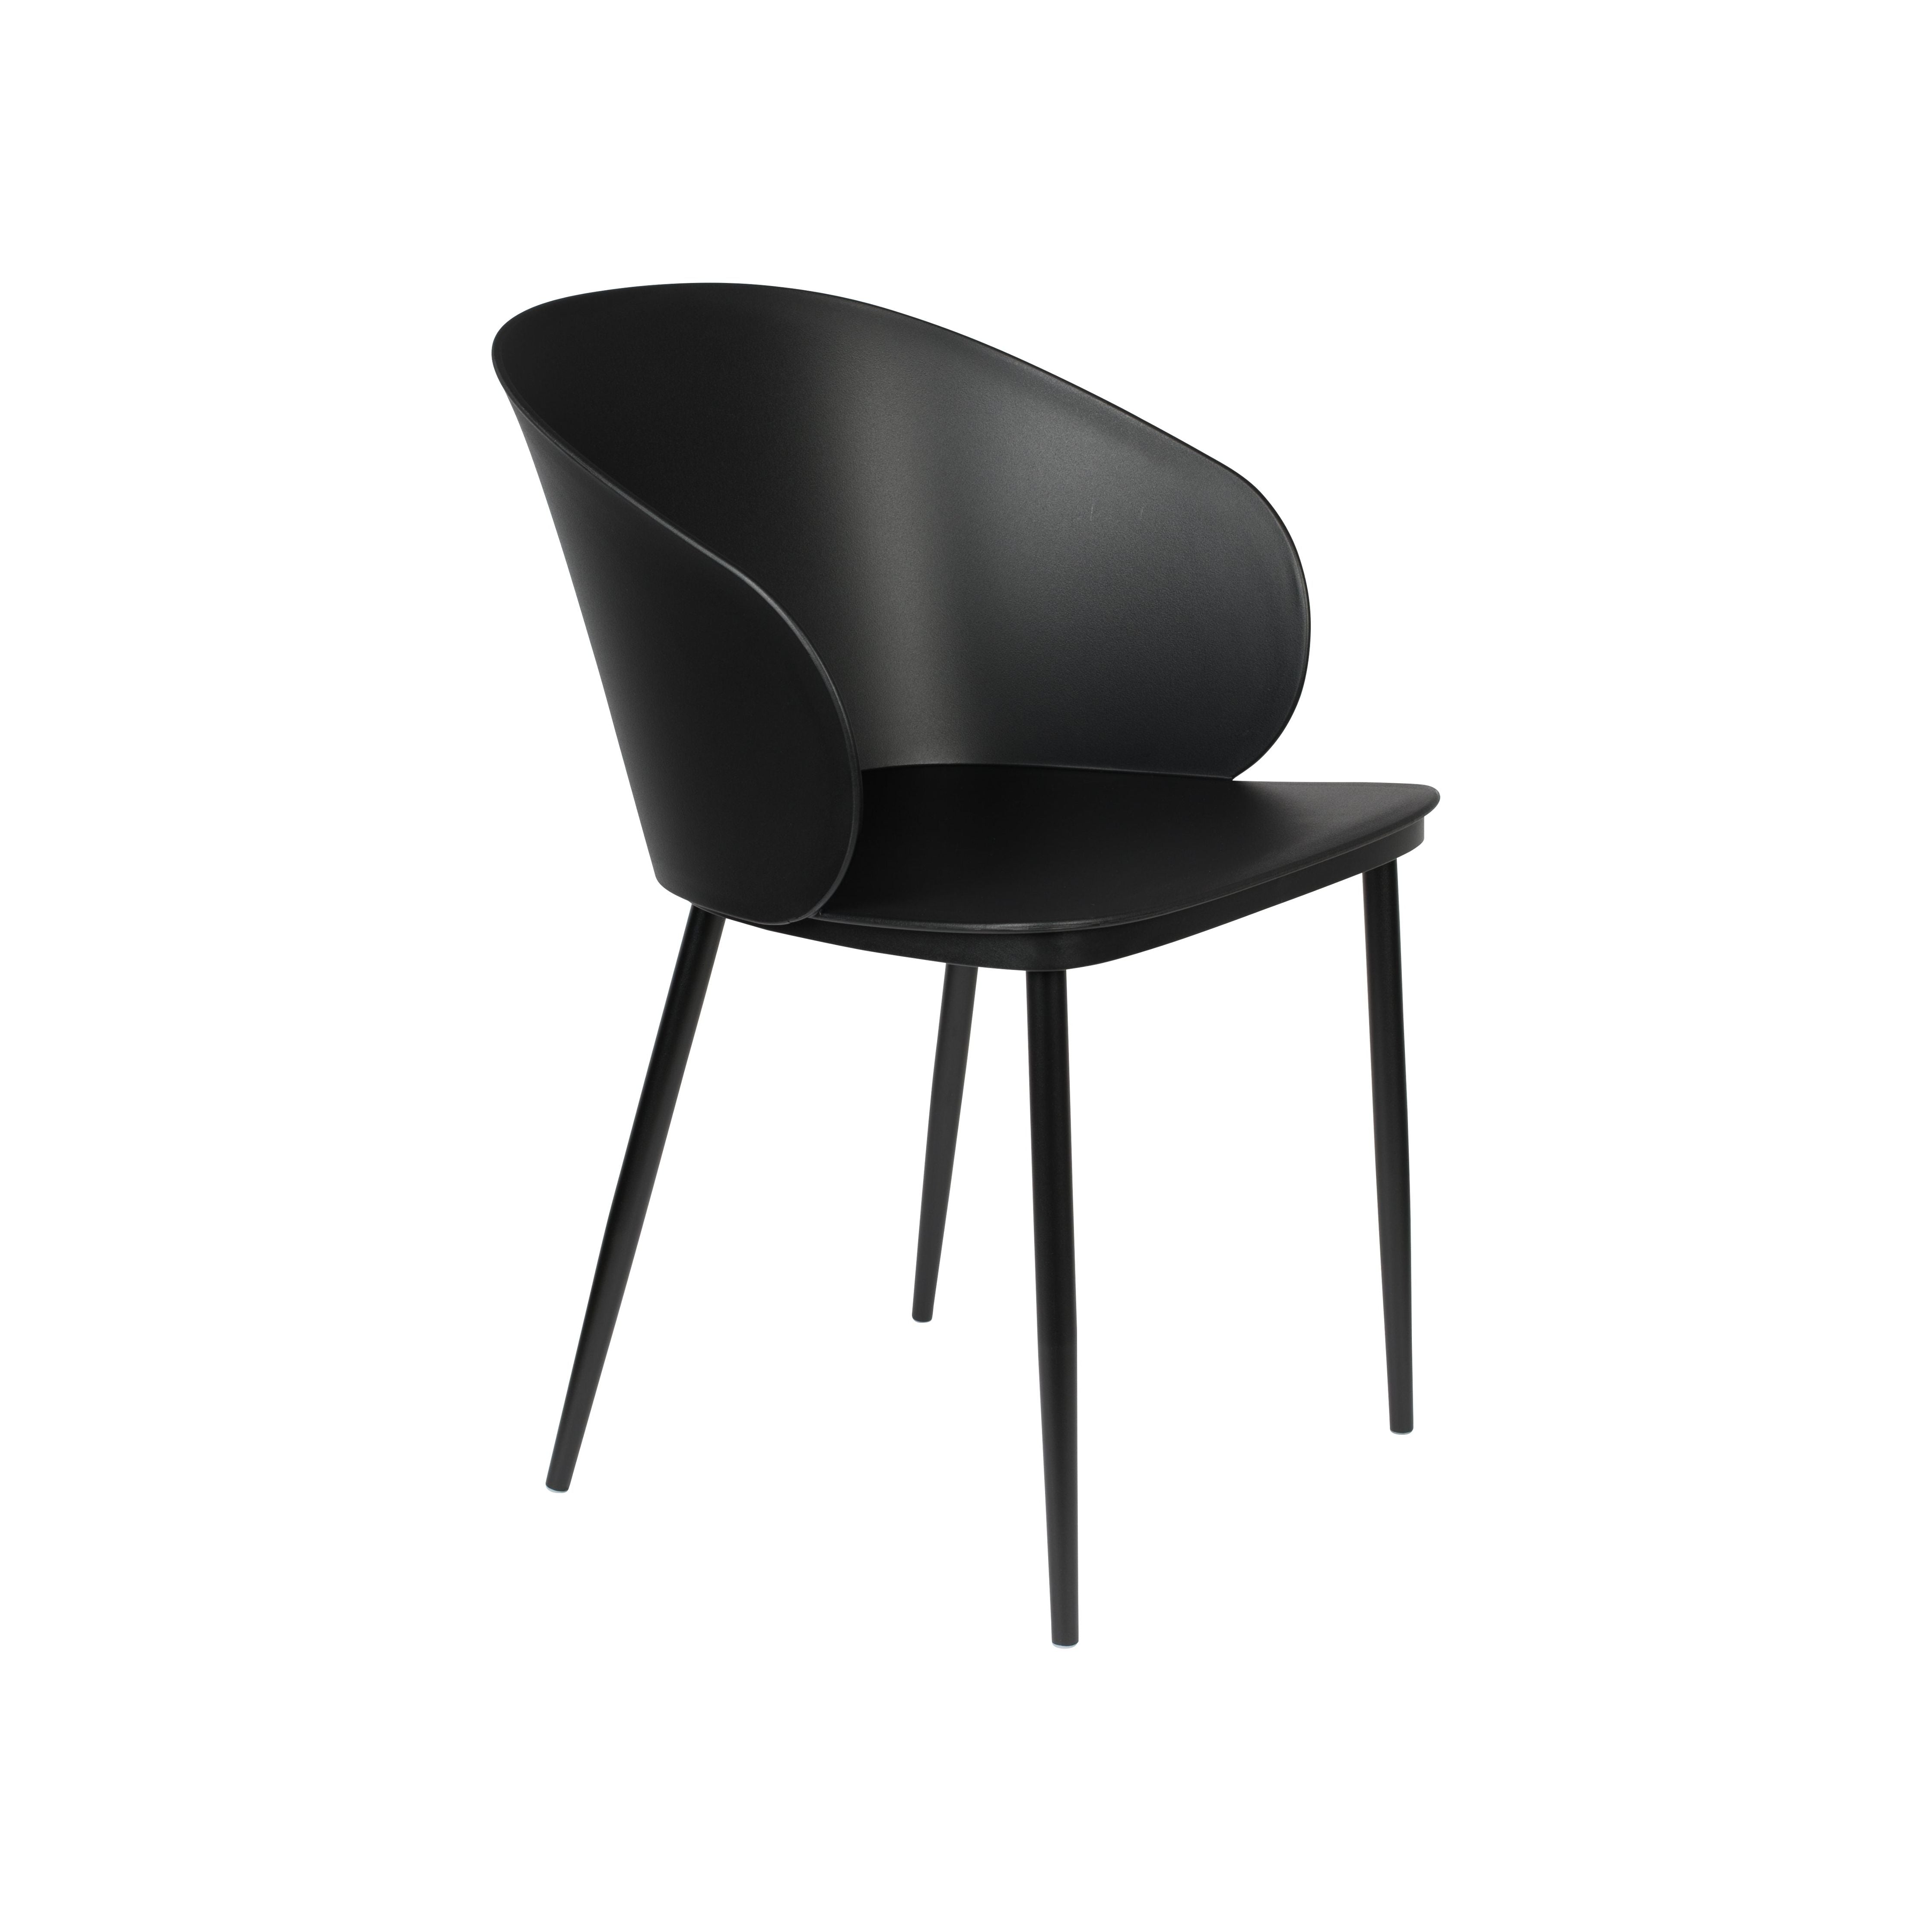 Chair gigi all black | 2 pieces